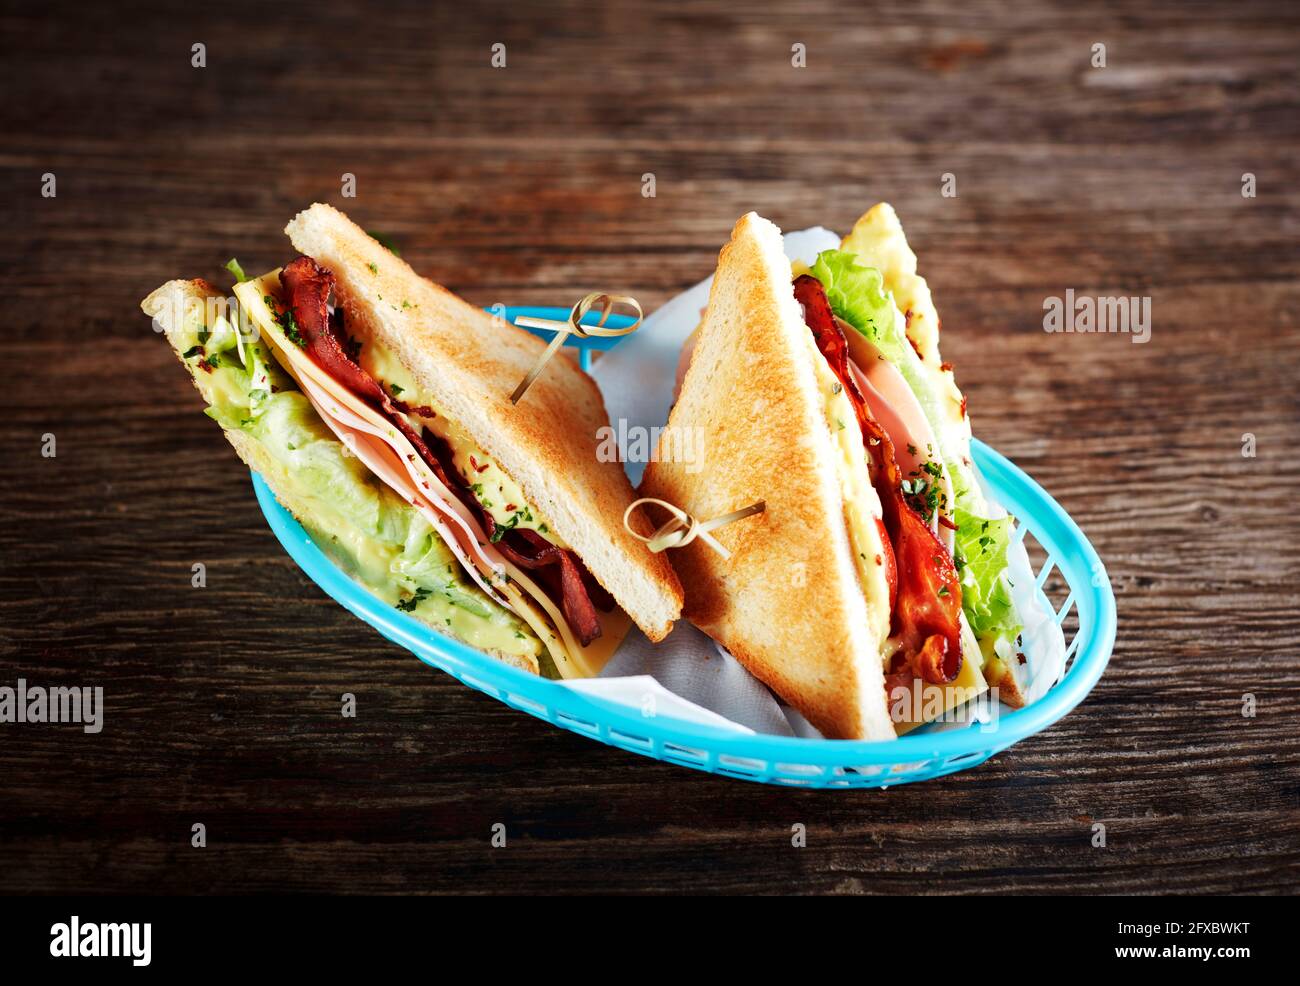 Studioaufnahme von zwei Sandwiches mit Schinken, Speck, Käse und Salat Stockfoto